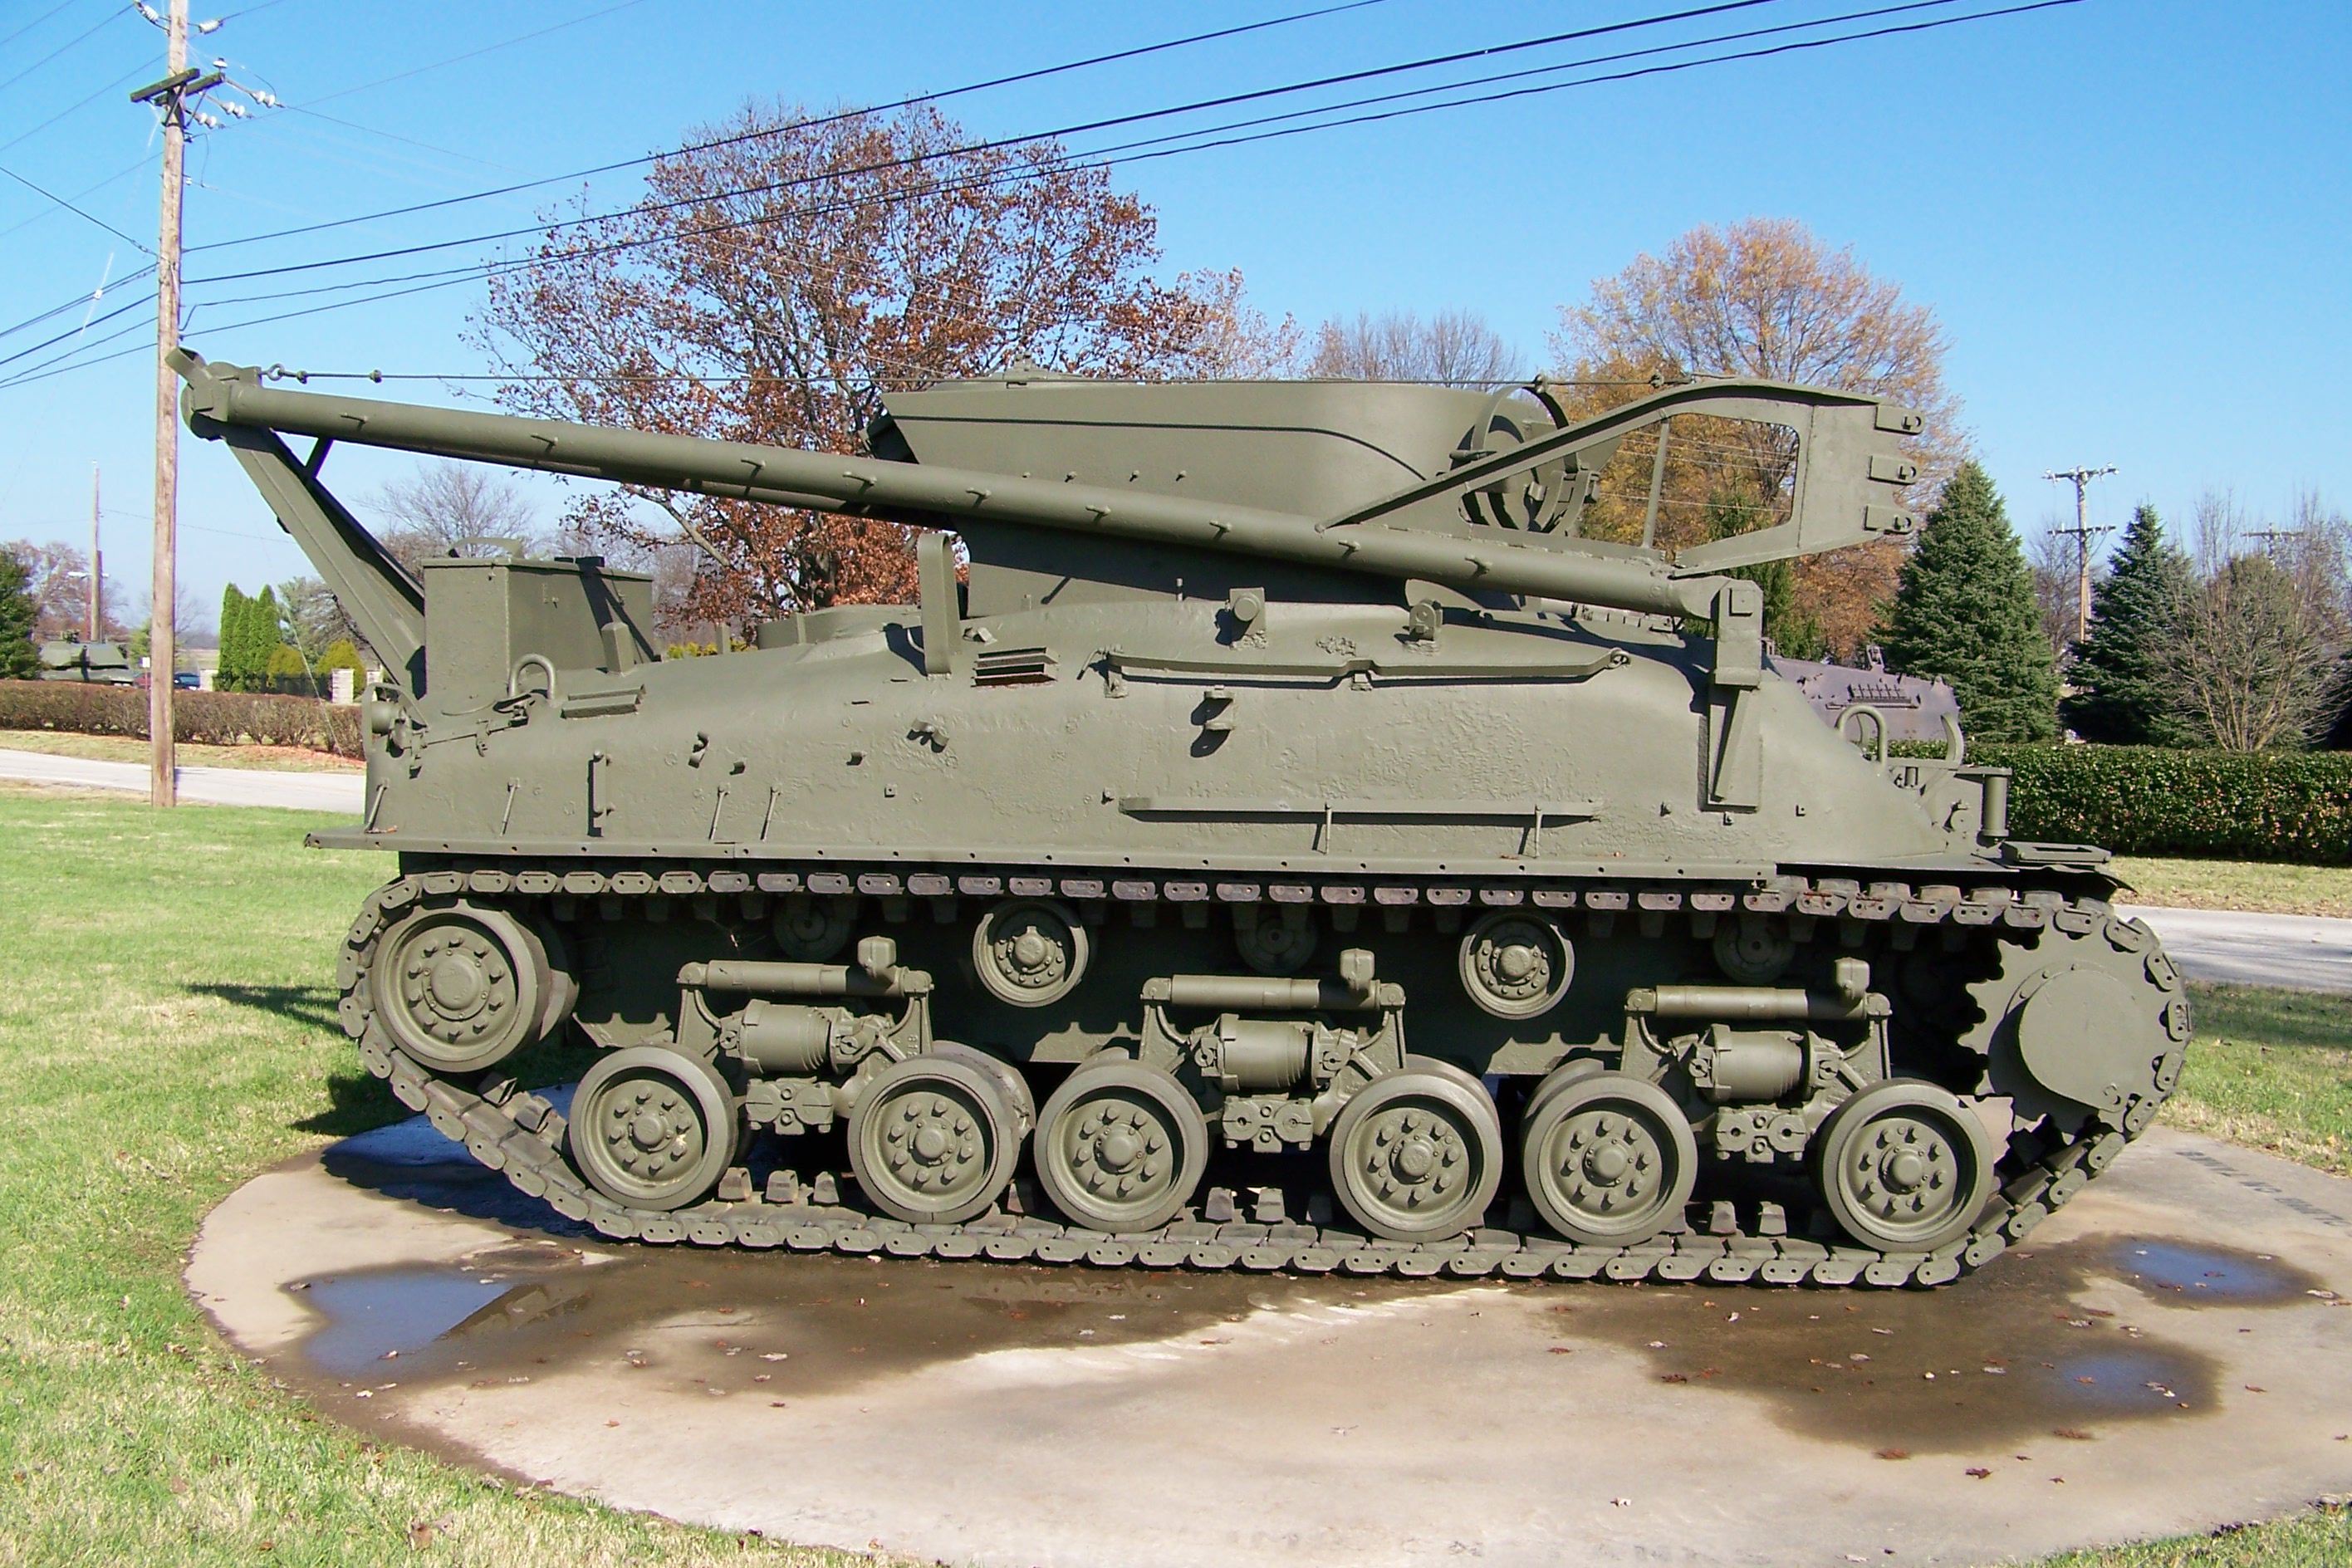 M32 Tank Recovery Vehicle - Wikipedia